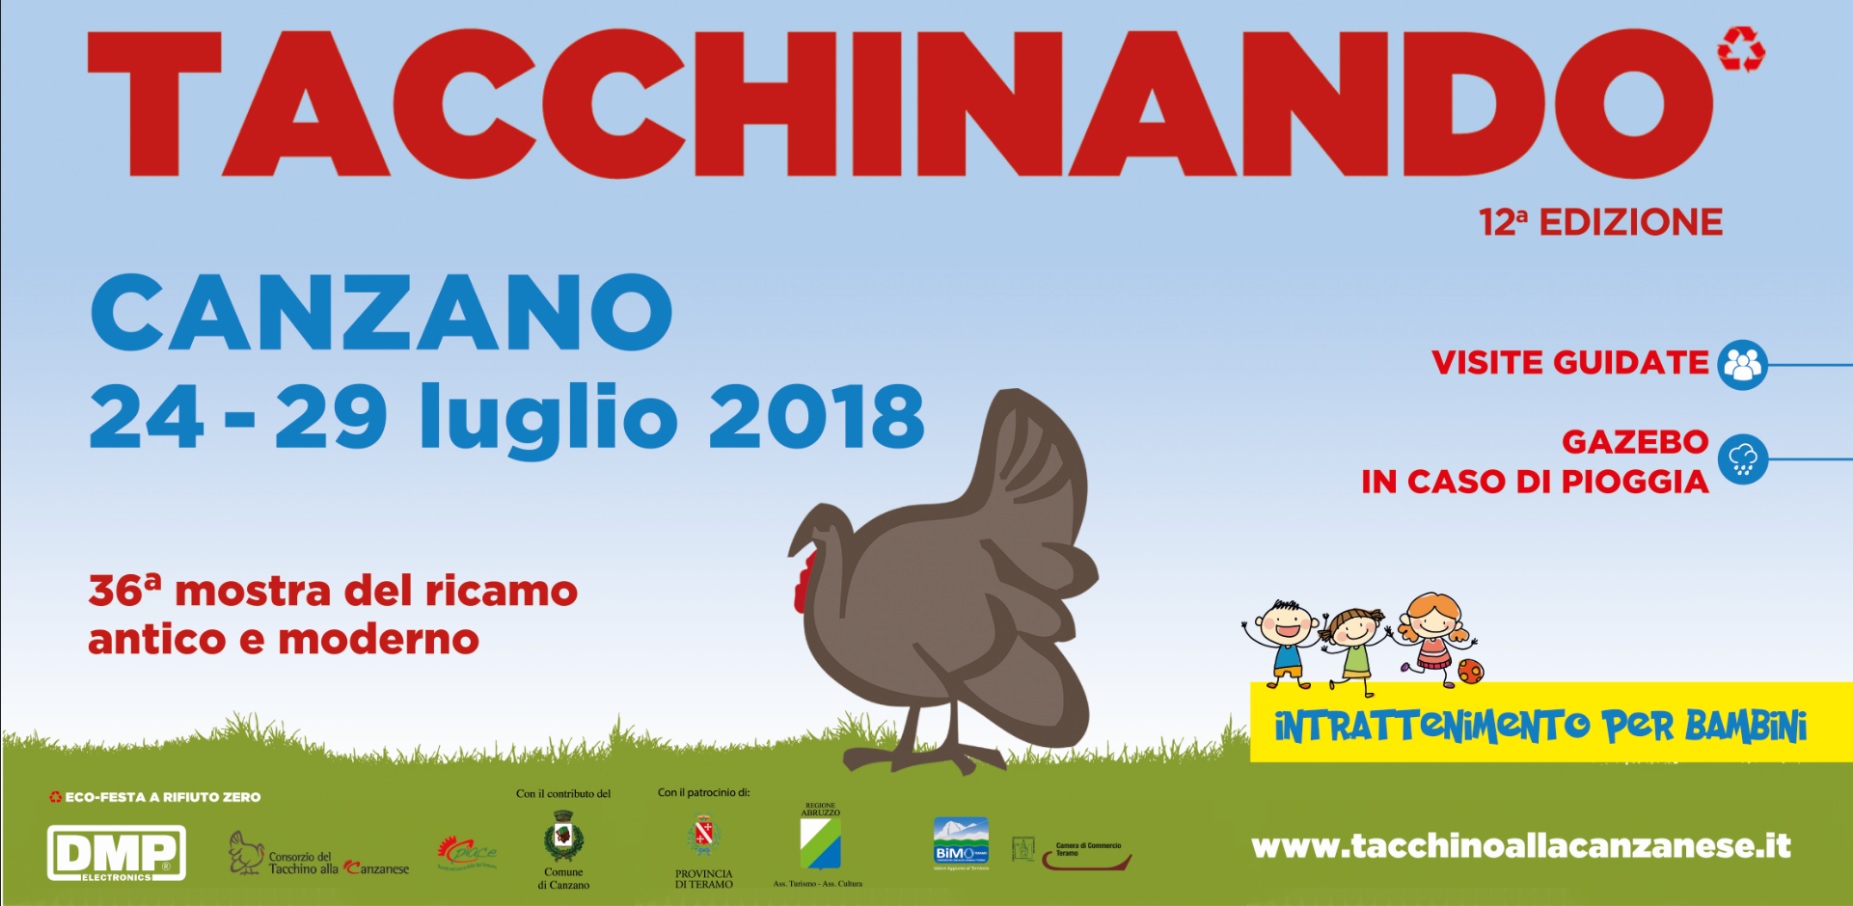 Dal 24 al 29 luglio torna “Tacchinando”, la grande Festa del Tacchino alla Canzanese